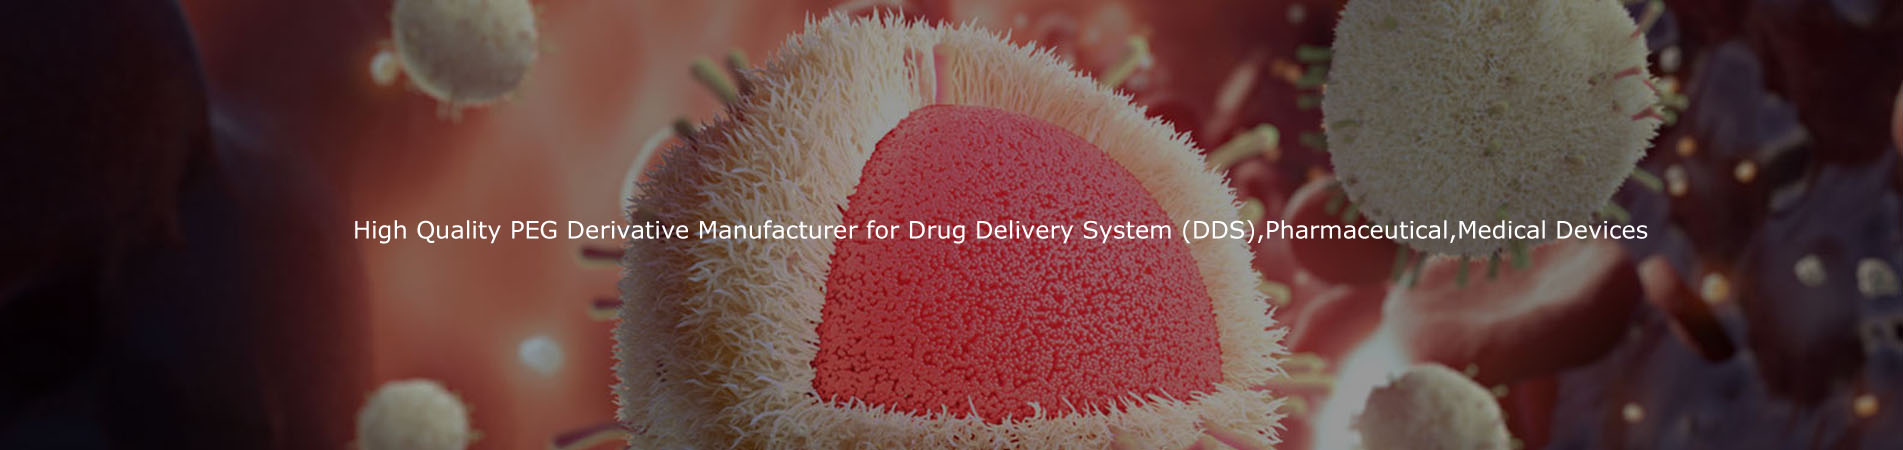 Hochwertiger PEG-Derivativhersteller für Drogenlieferungssystem (DDS), pharmazeutische, medizinische Geräte